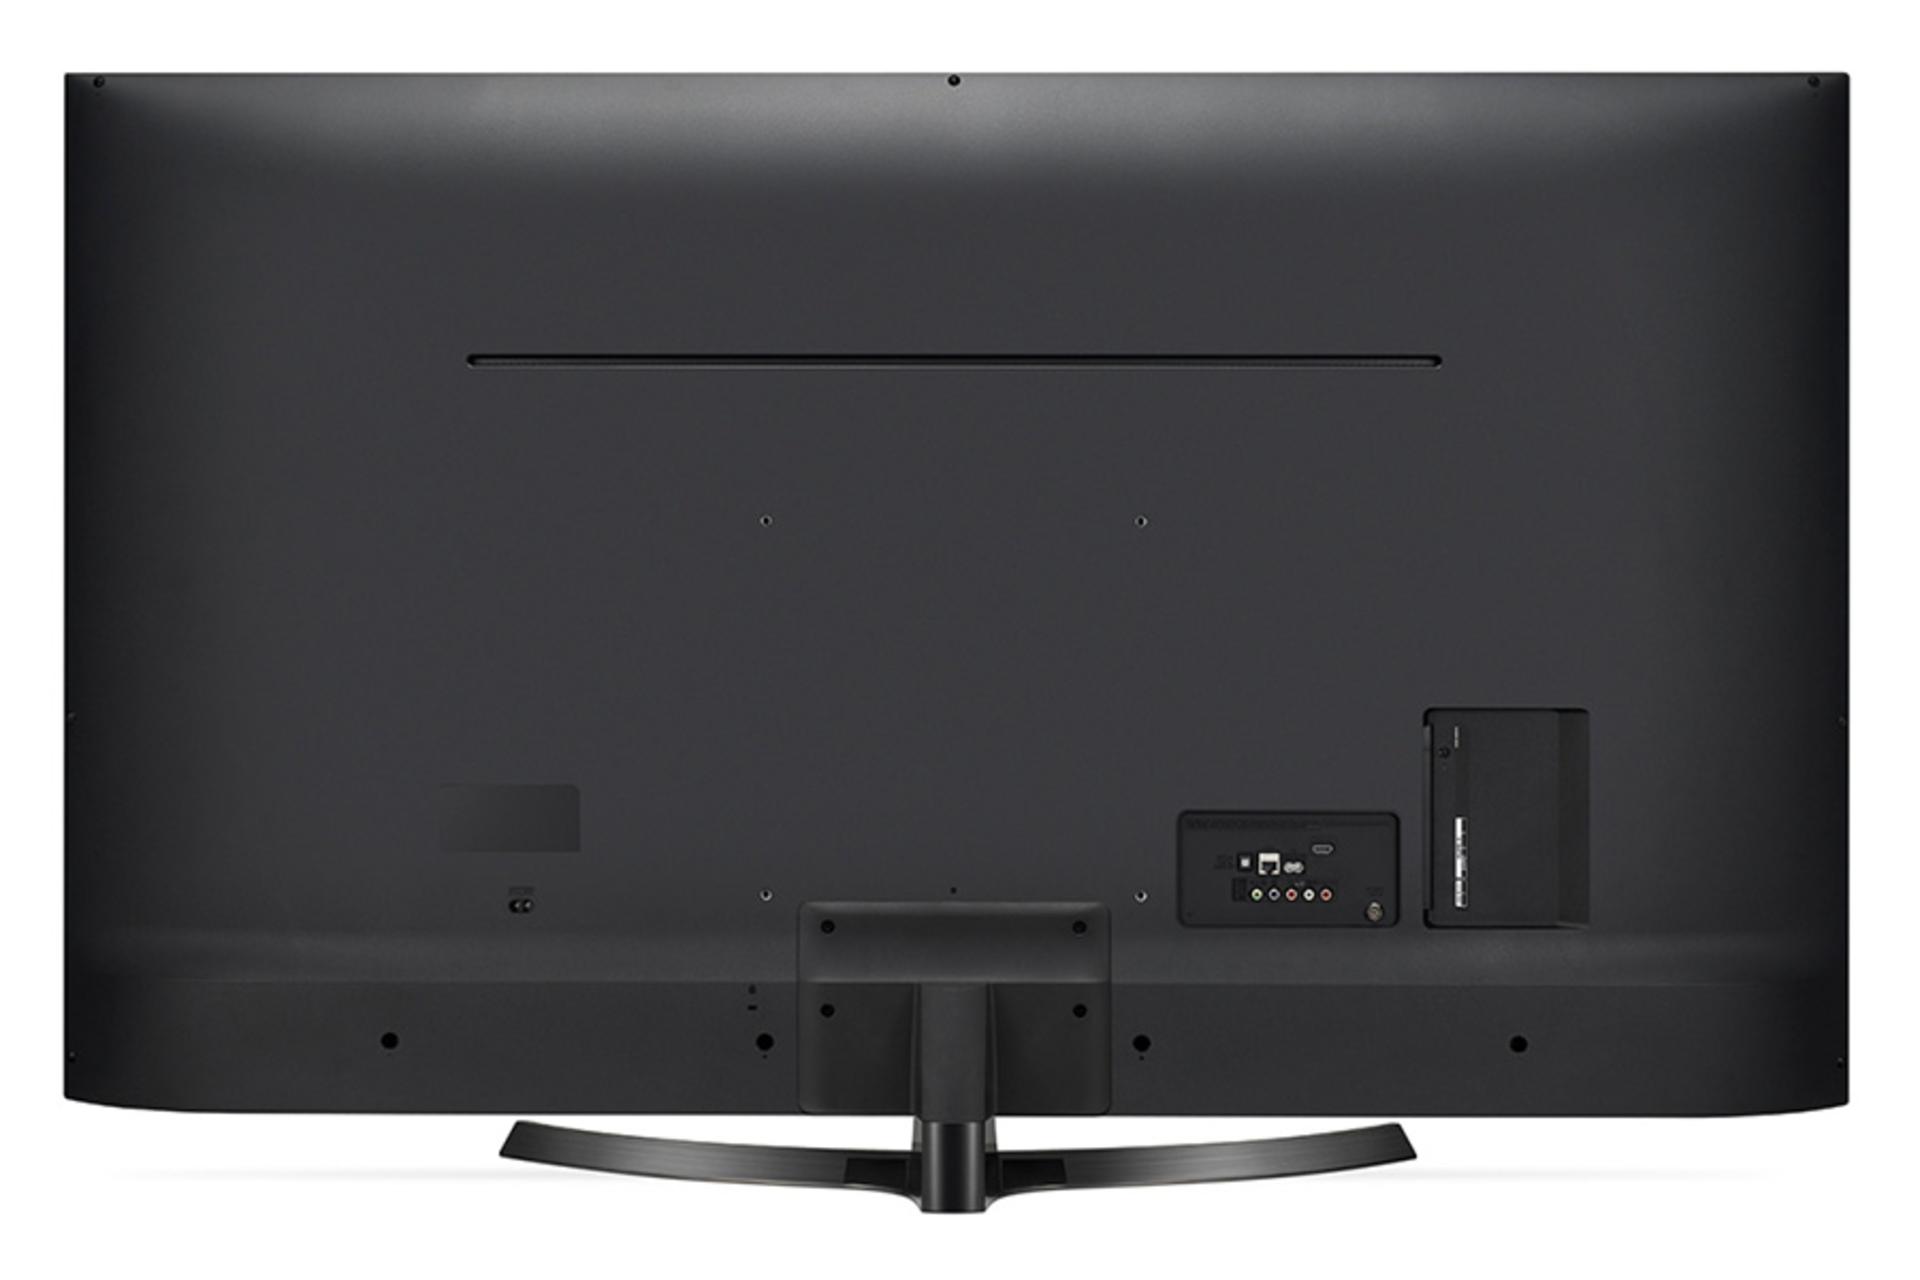 نمای پشت تلویزیون UK6400 مدل 49 اینچ و نمایش پورت ها